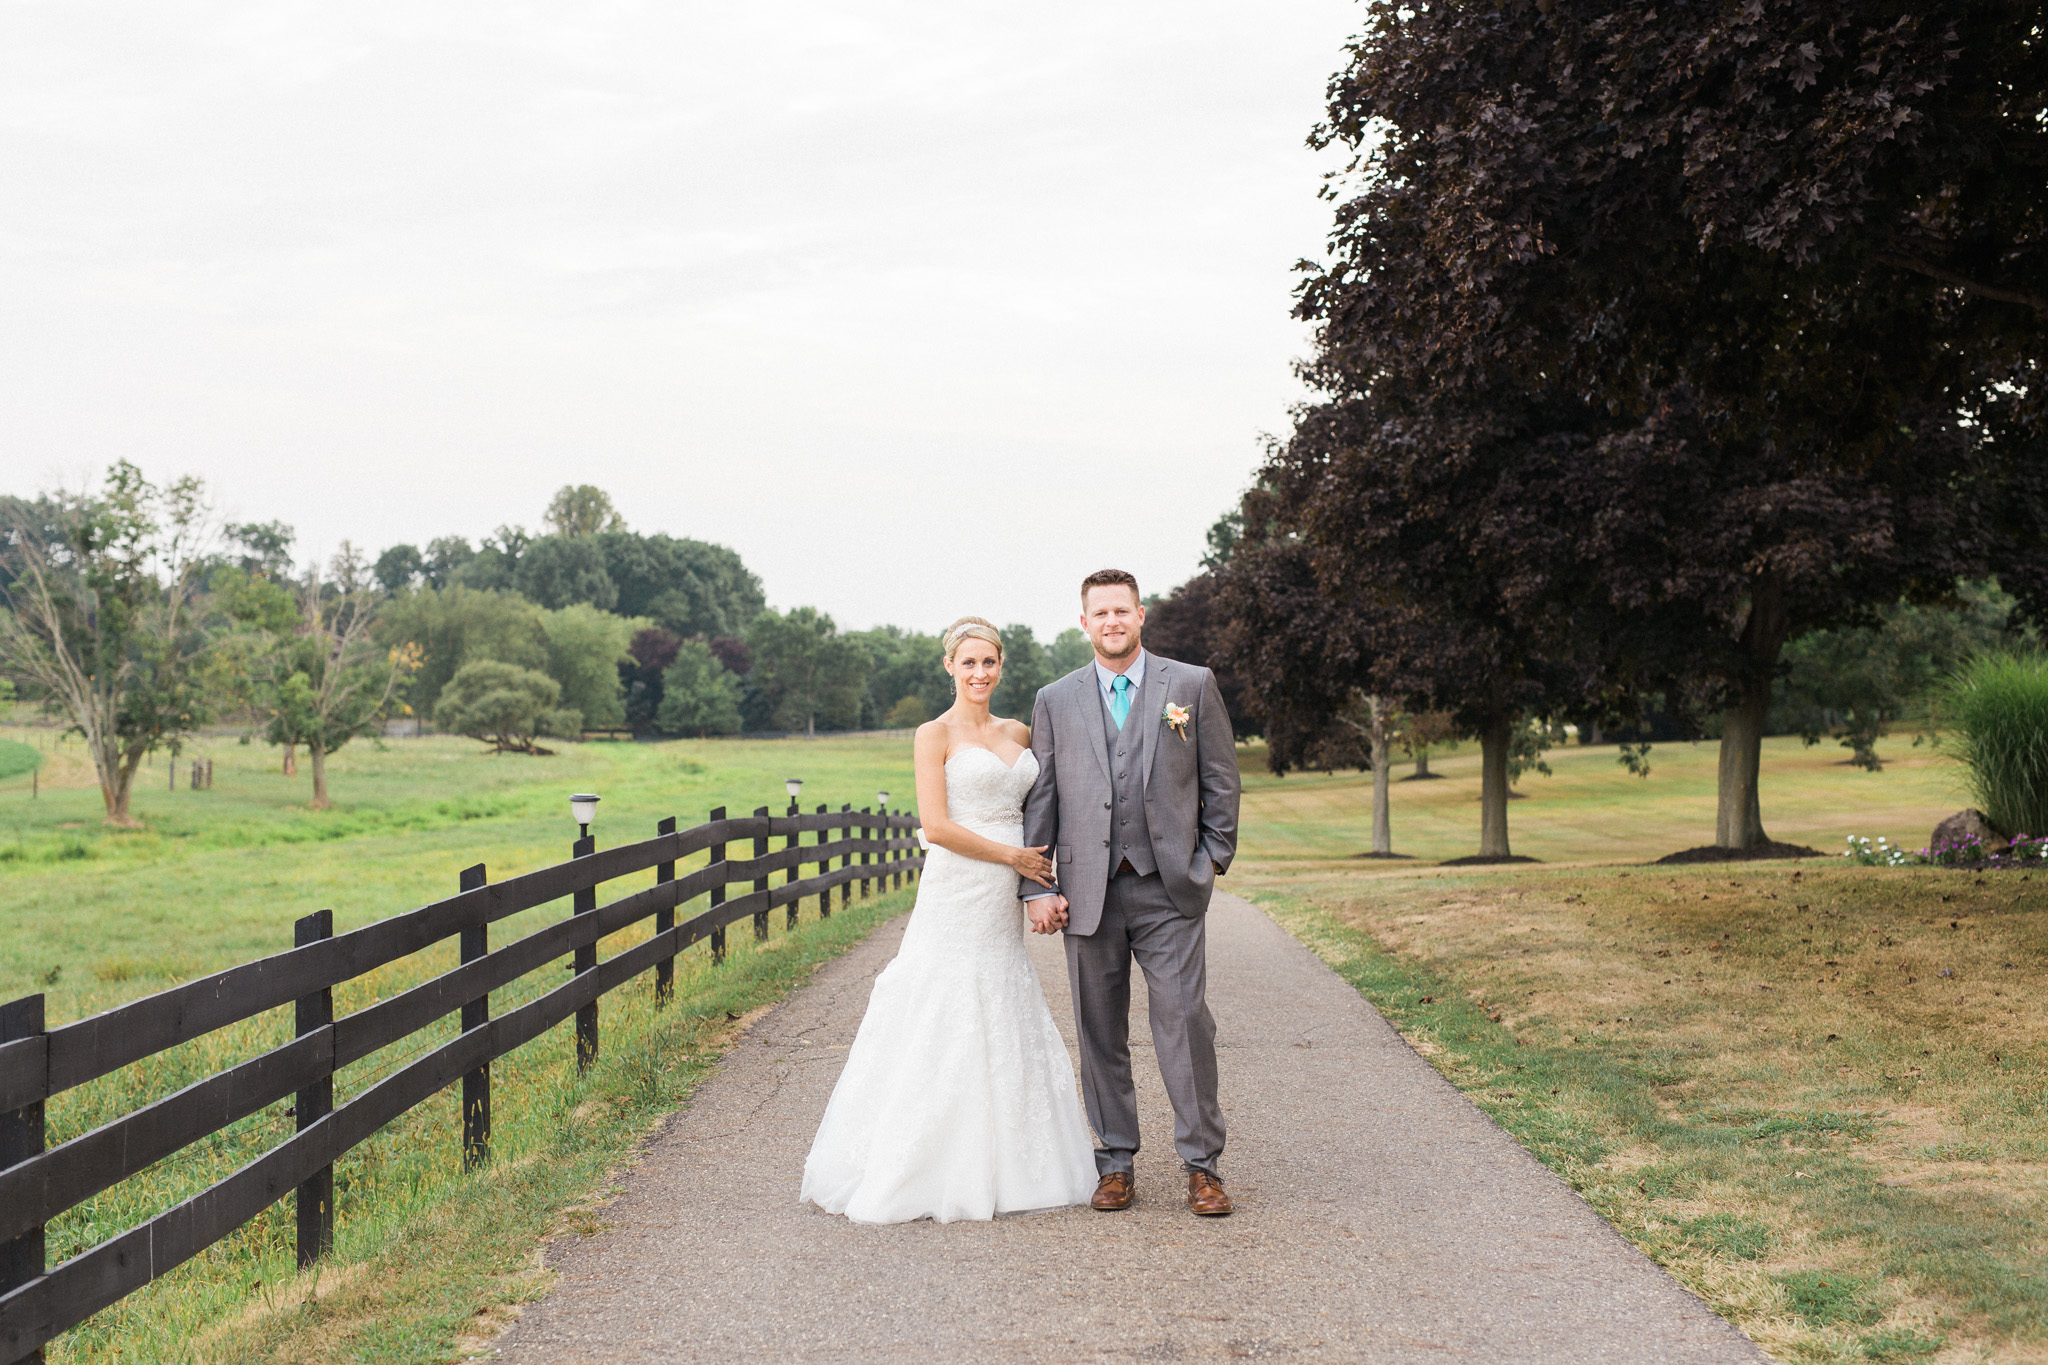 BEE MINE PHOTOGRAPHY // Canton, Ohio Photographer // Brookside Farms Louisville Ohio Wedding, rustic barn wedding, turquoise and pink wedding